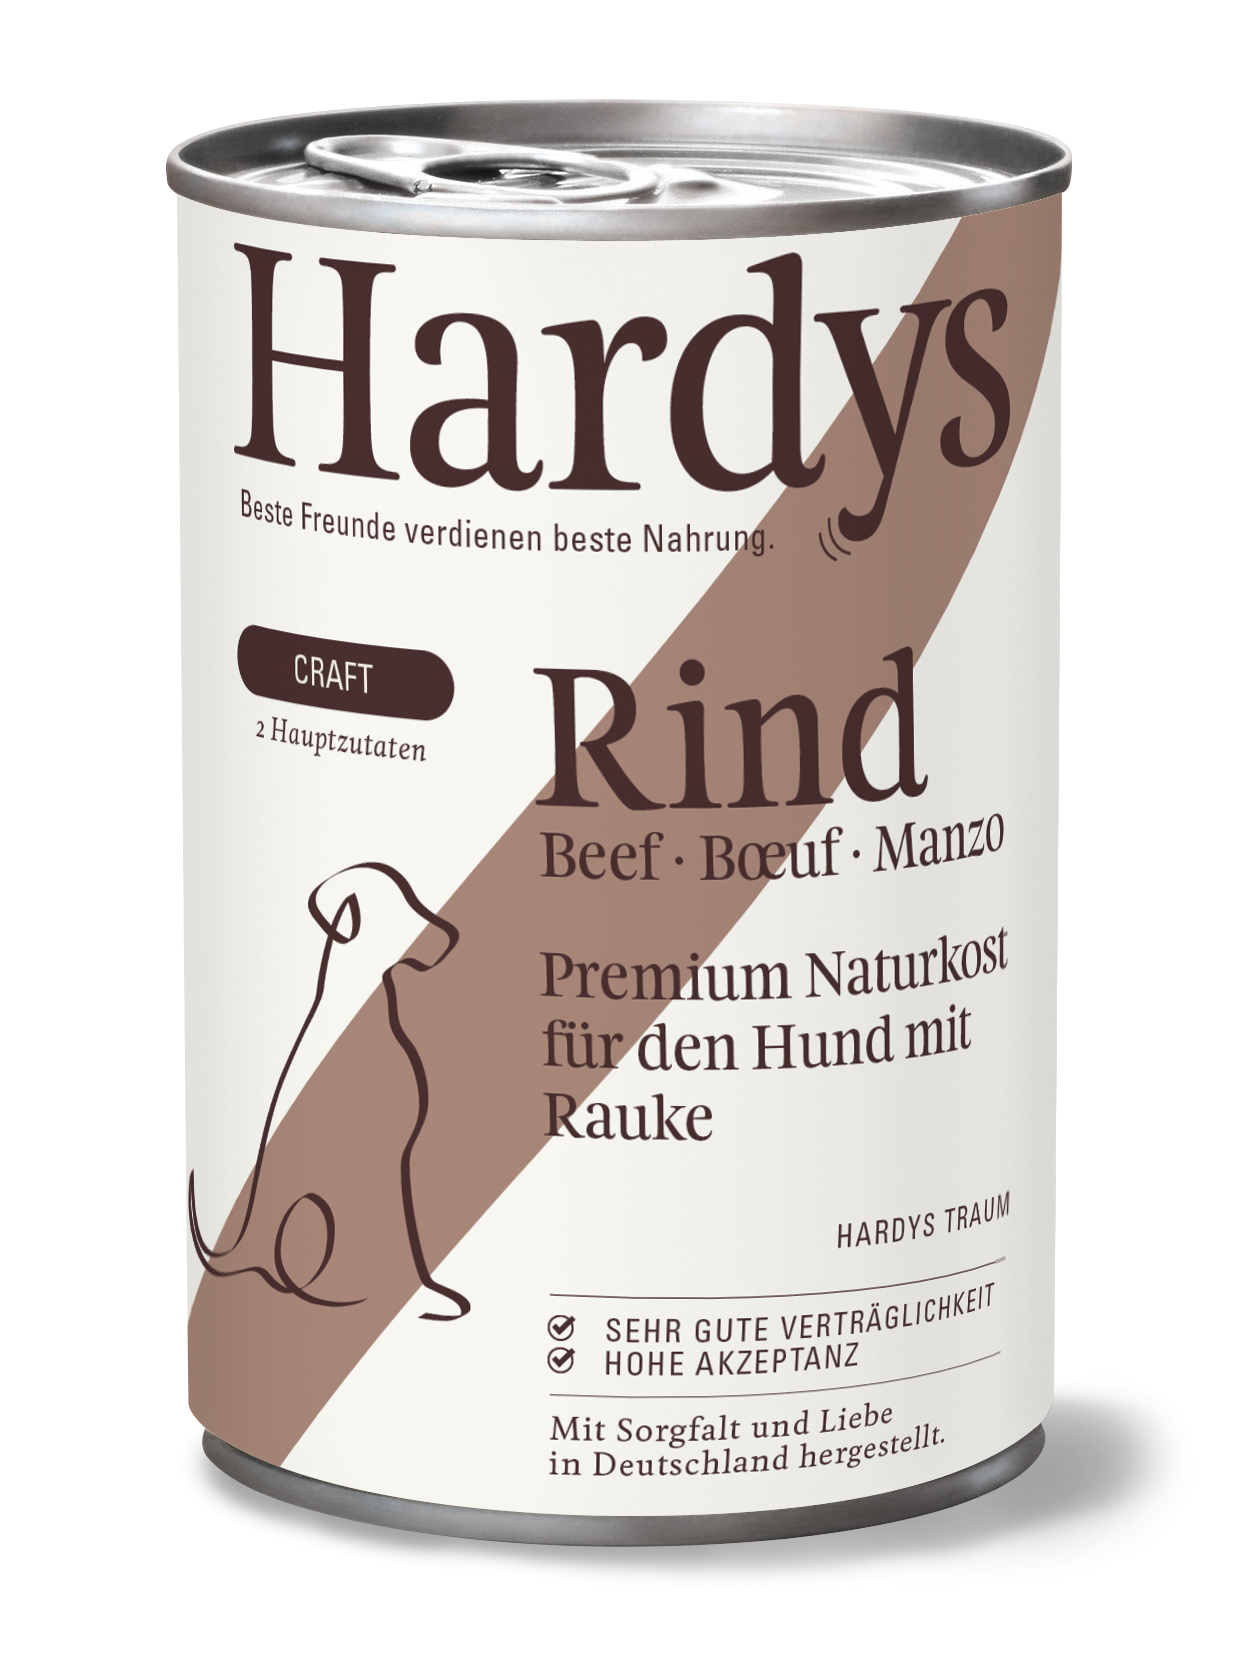 Hardys Craft Rind mit Rauke, 400 g